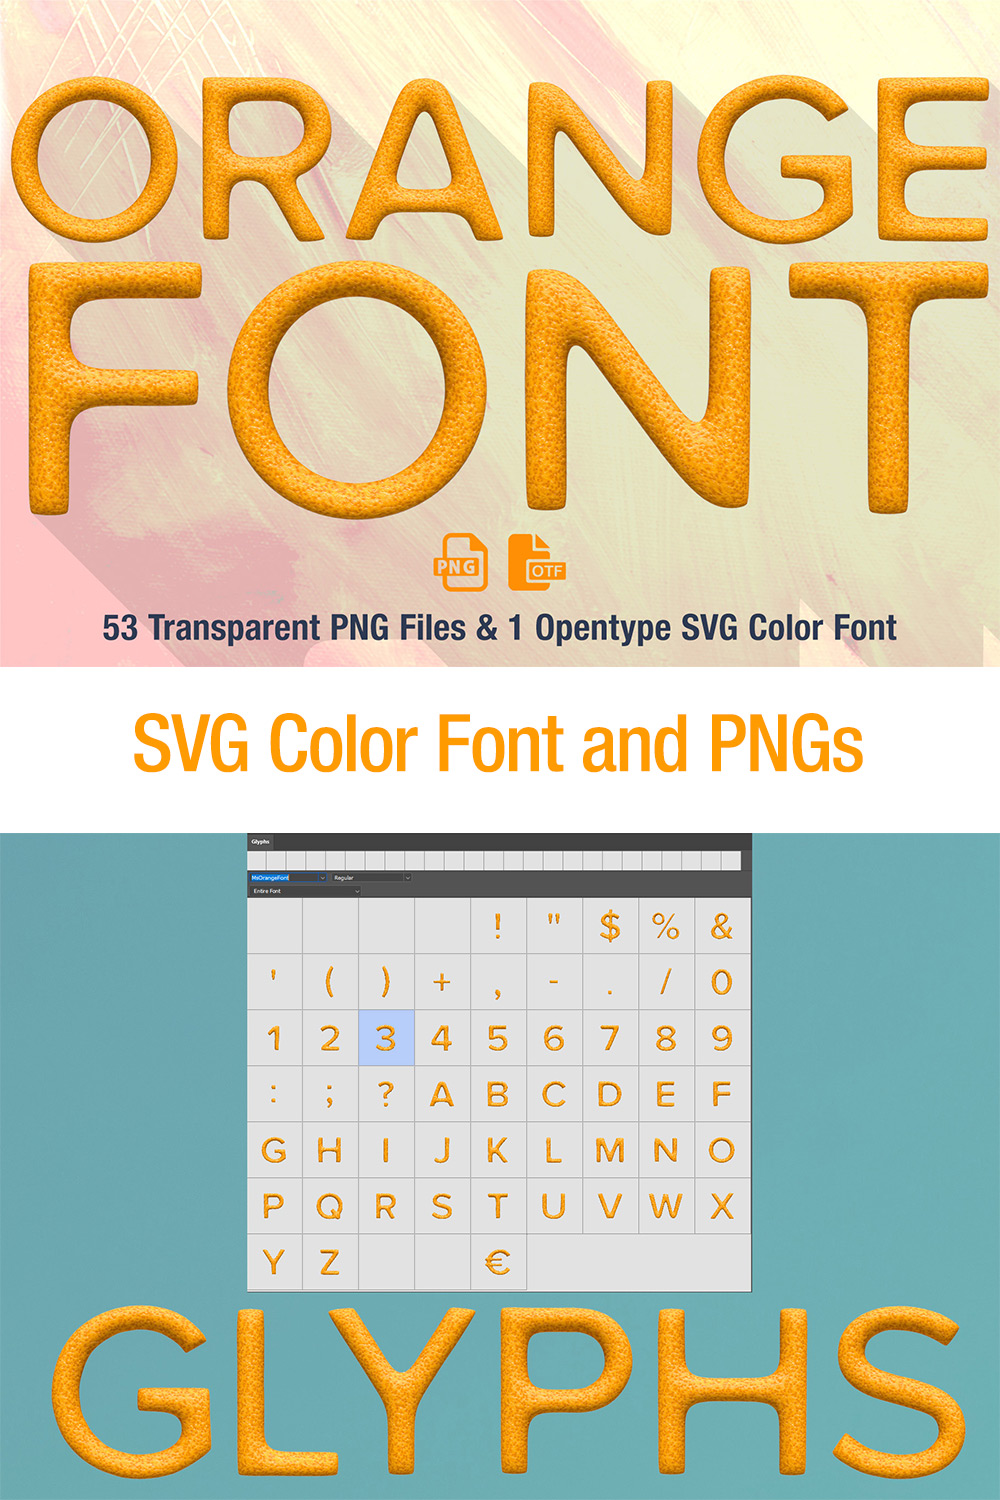 Ms Orange Opentype SVG Font and PNG Design pinterest image.